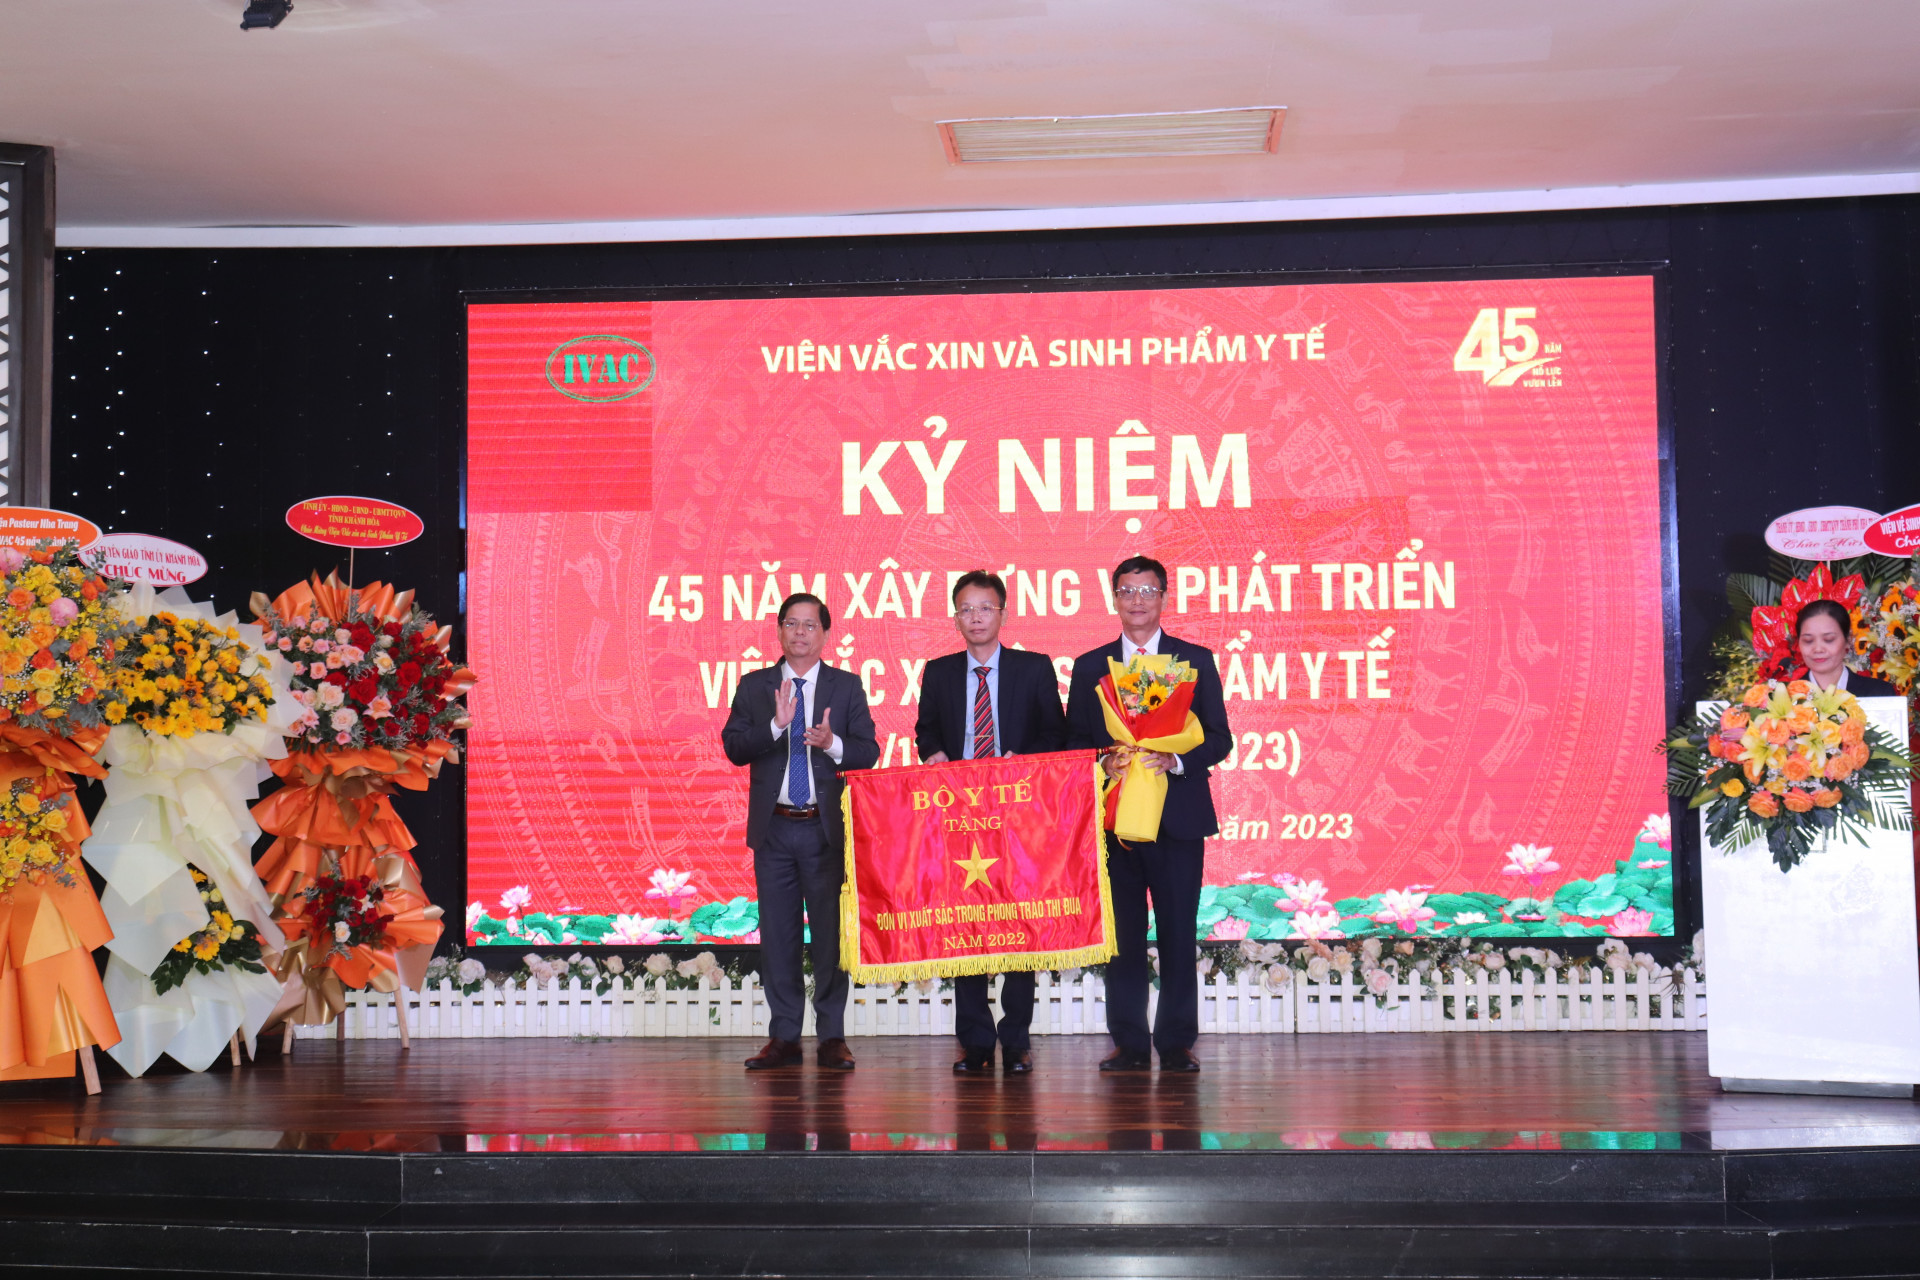 Đồng  chí  Nguyễn  Tấn  Tuân  trao  Cờ  thi đua cho tập  thể  lãnh  đạo  Viện Vắc xin và Sinh phẩm Y tế